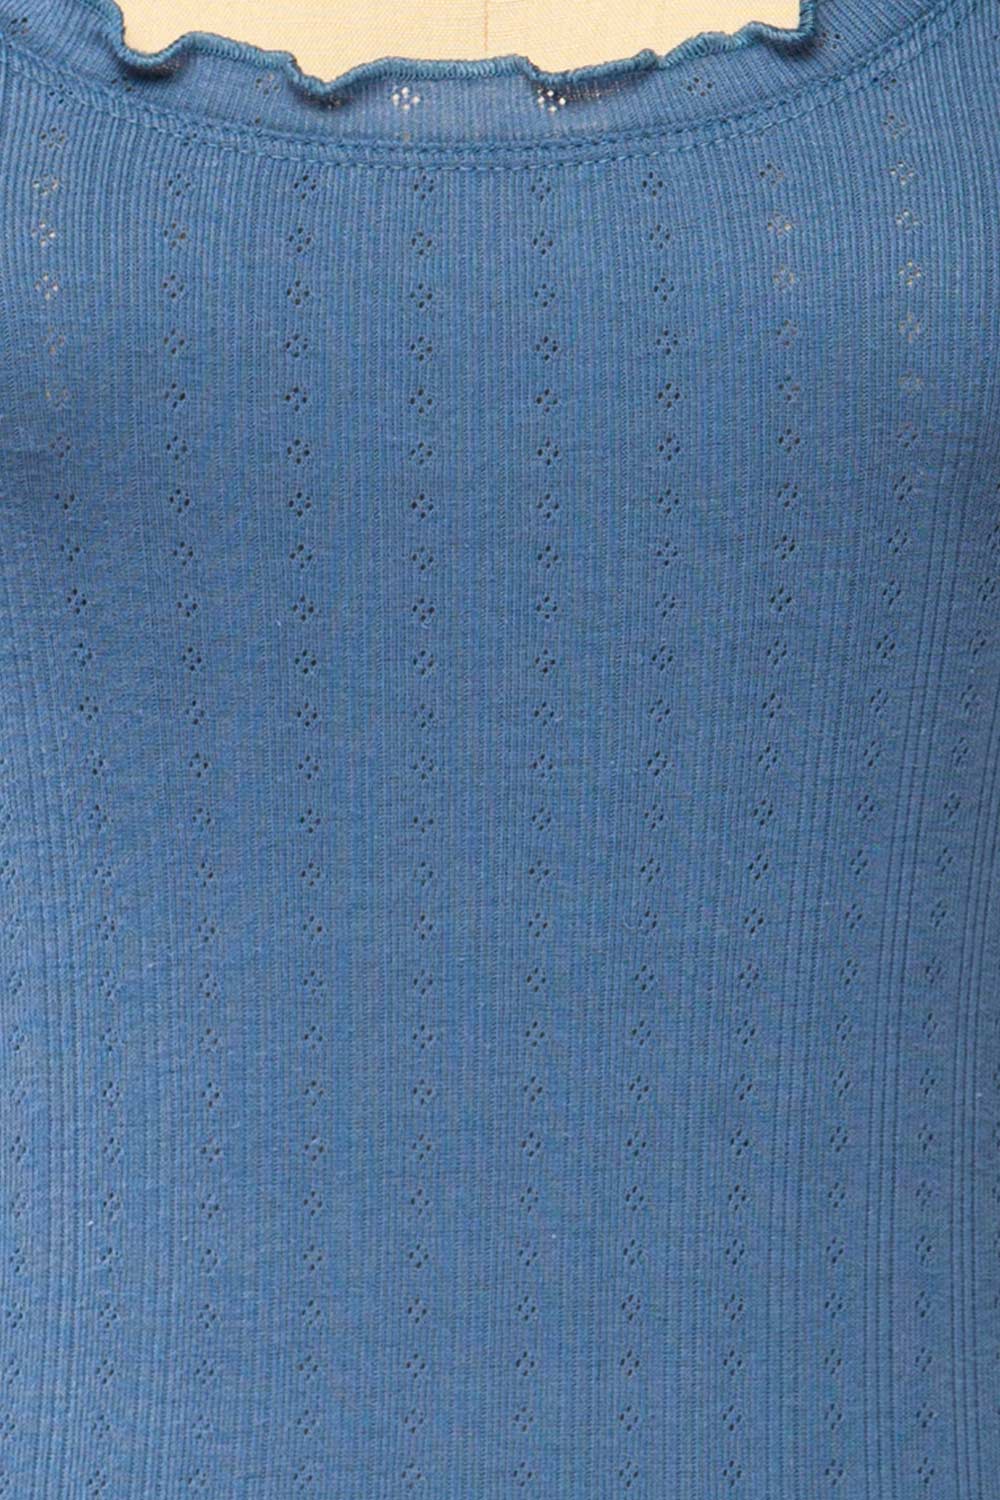 Boke Blue Openwork Knit Tank Top | La petite garçonne fabric 